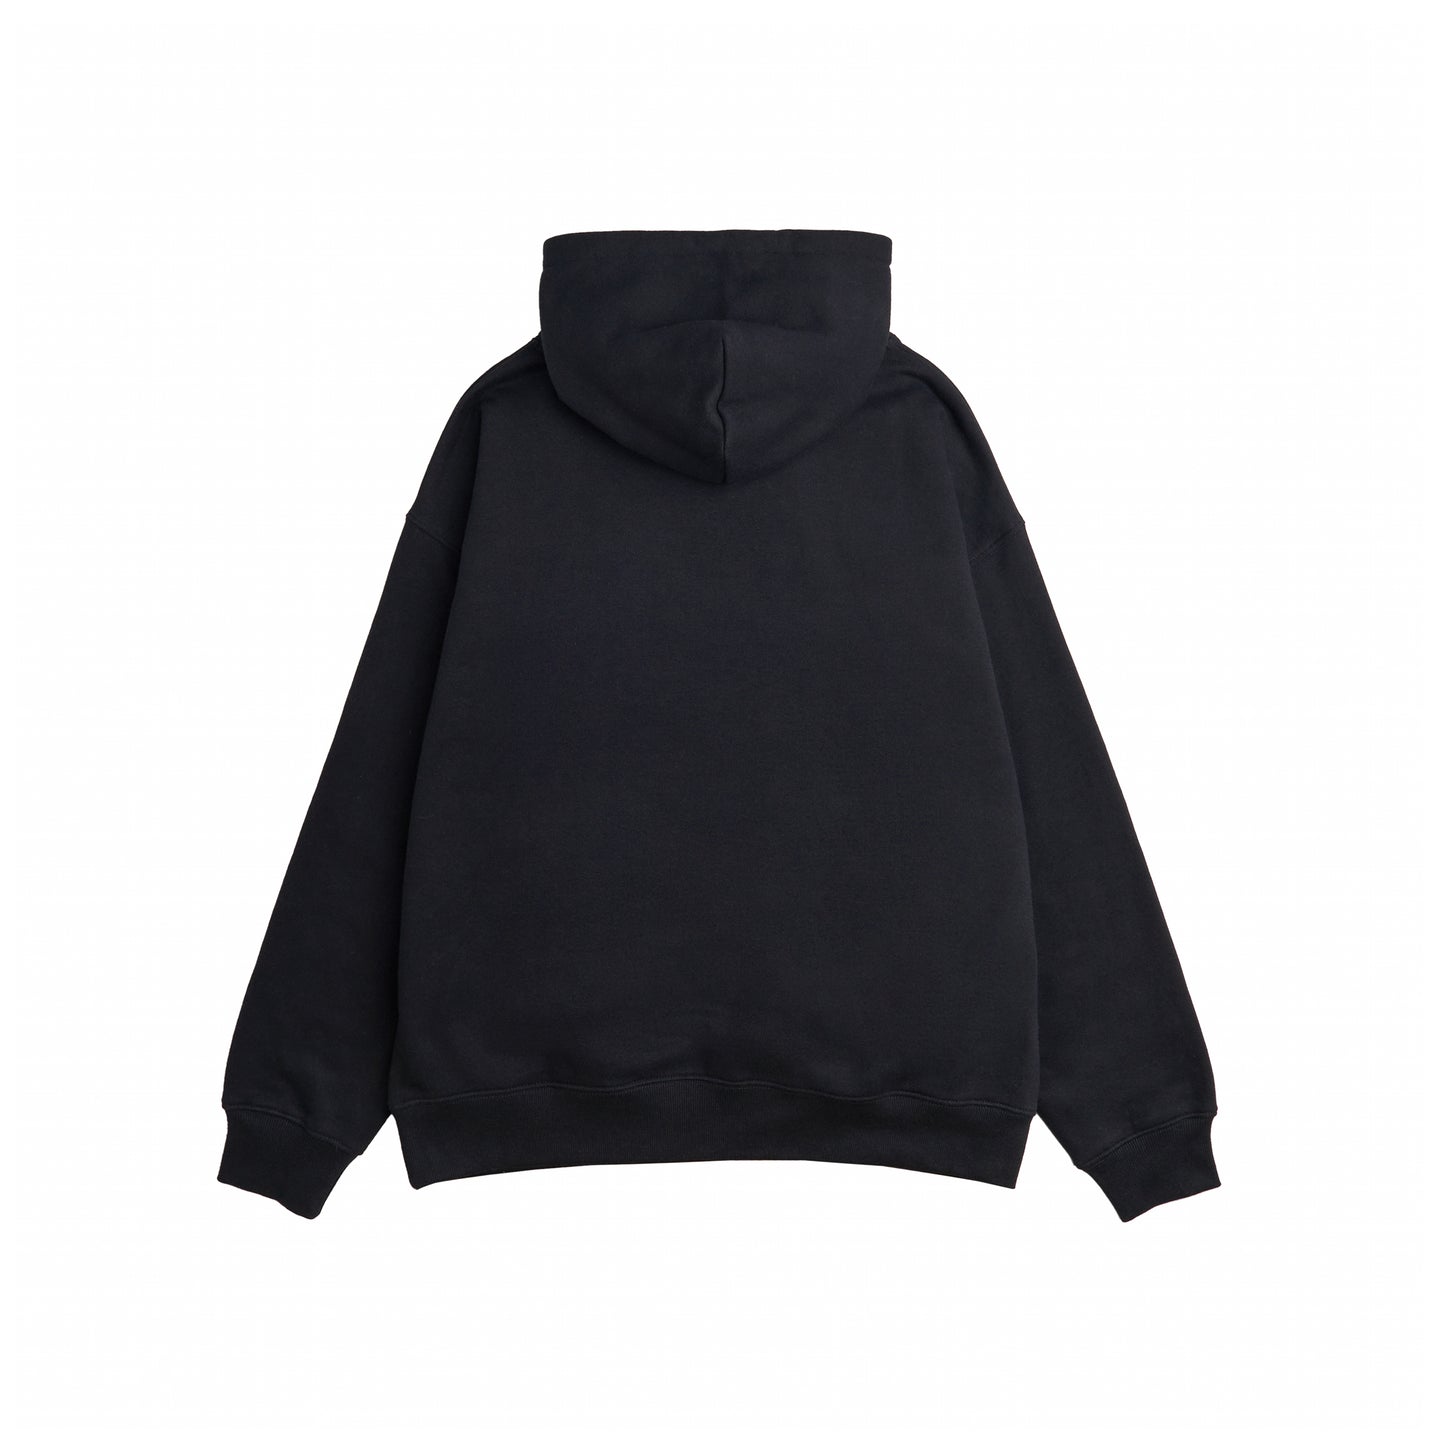 CASCA zip hoodie black